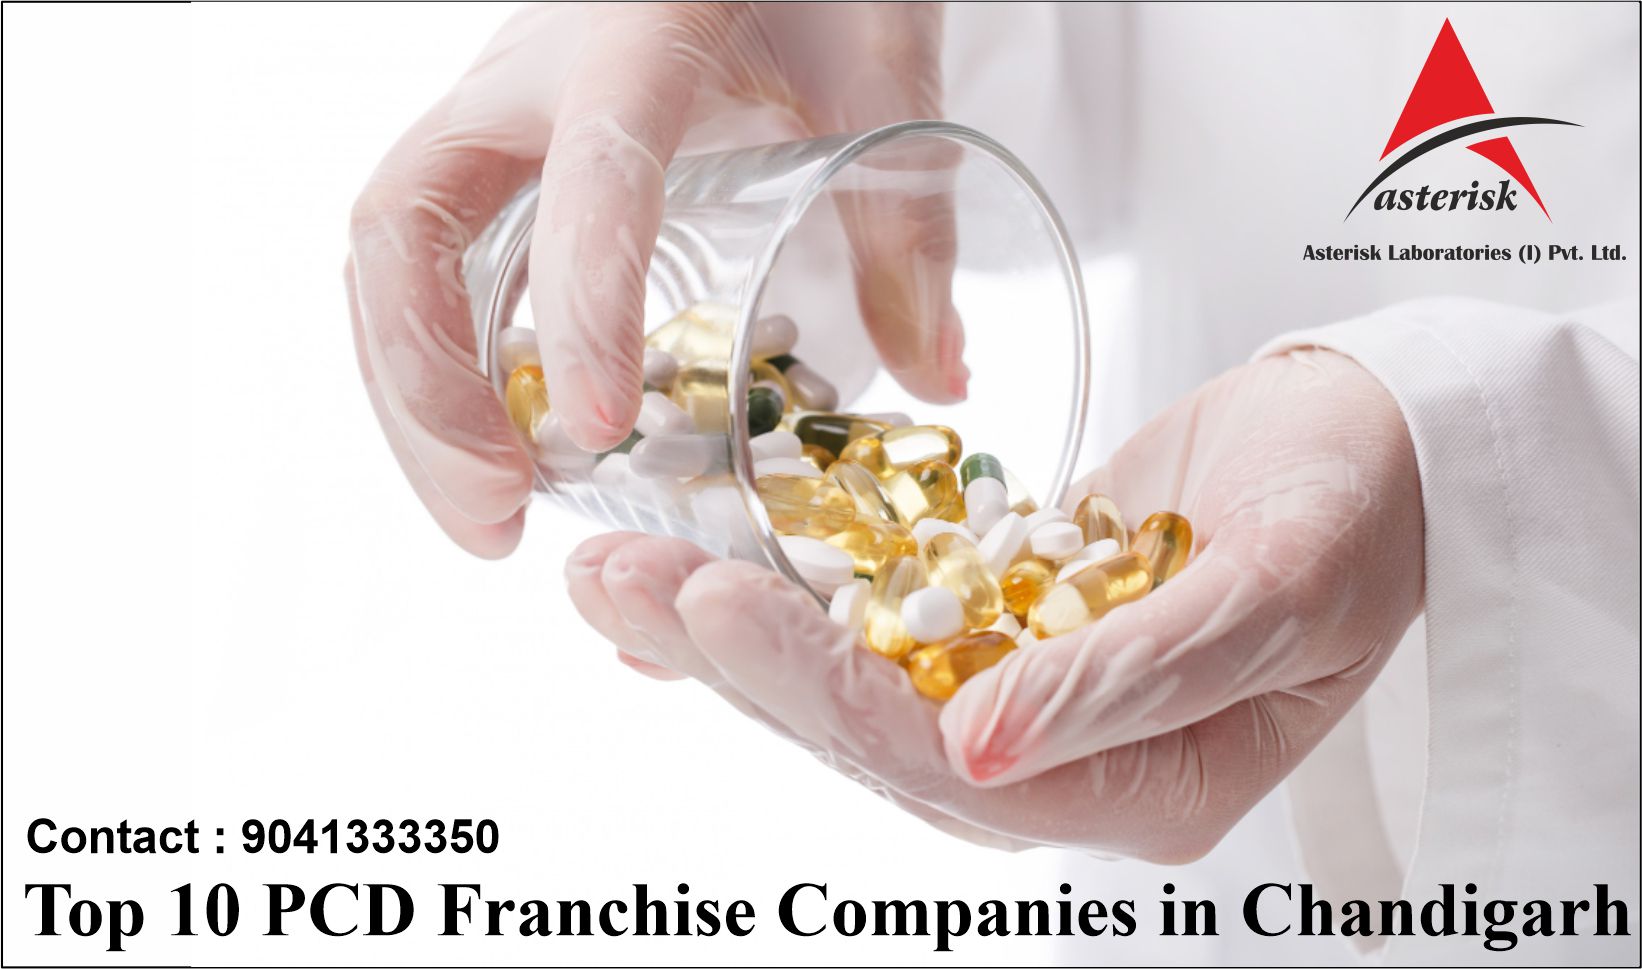 Top 10 PCD Pharma Companies in Chandigarh